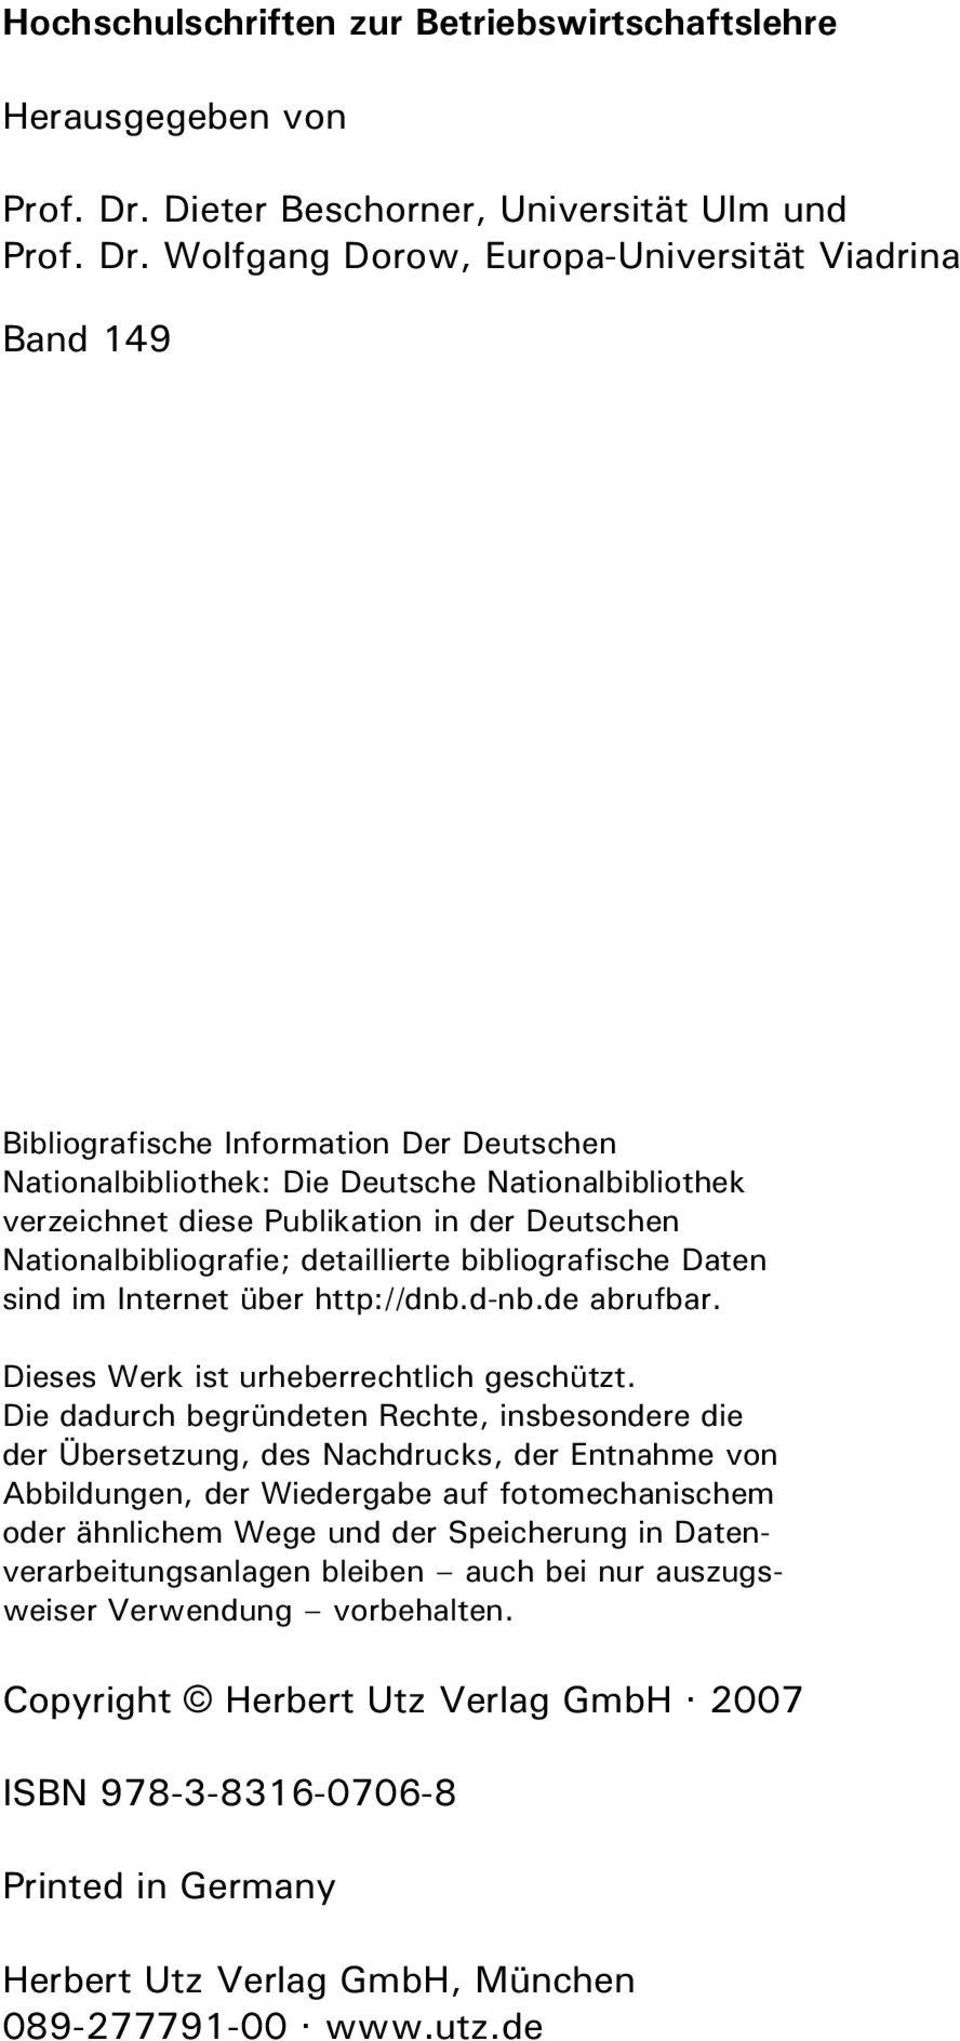 Wolfgang Dorow, Europa-Universität Viadrina Band 149 Bibliografische Information Der Deutschen Nationalbibliothek: Die Deutsche Nationalbibliothek verzeichnet diese Publikation in der Deutschen